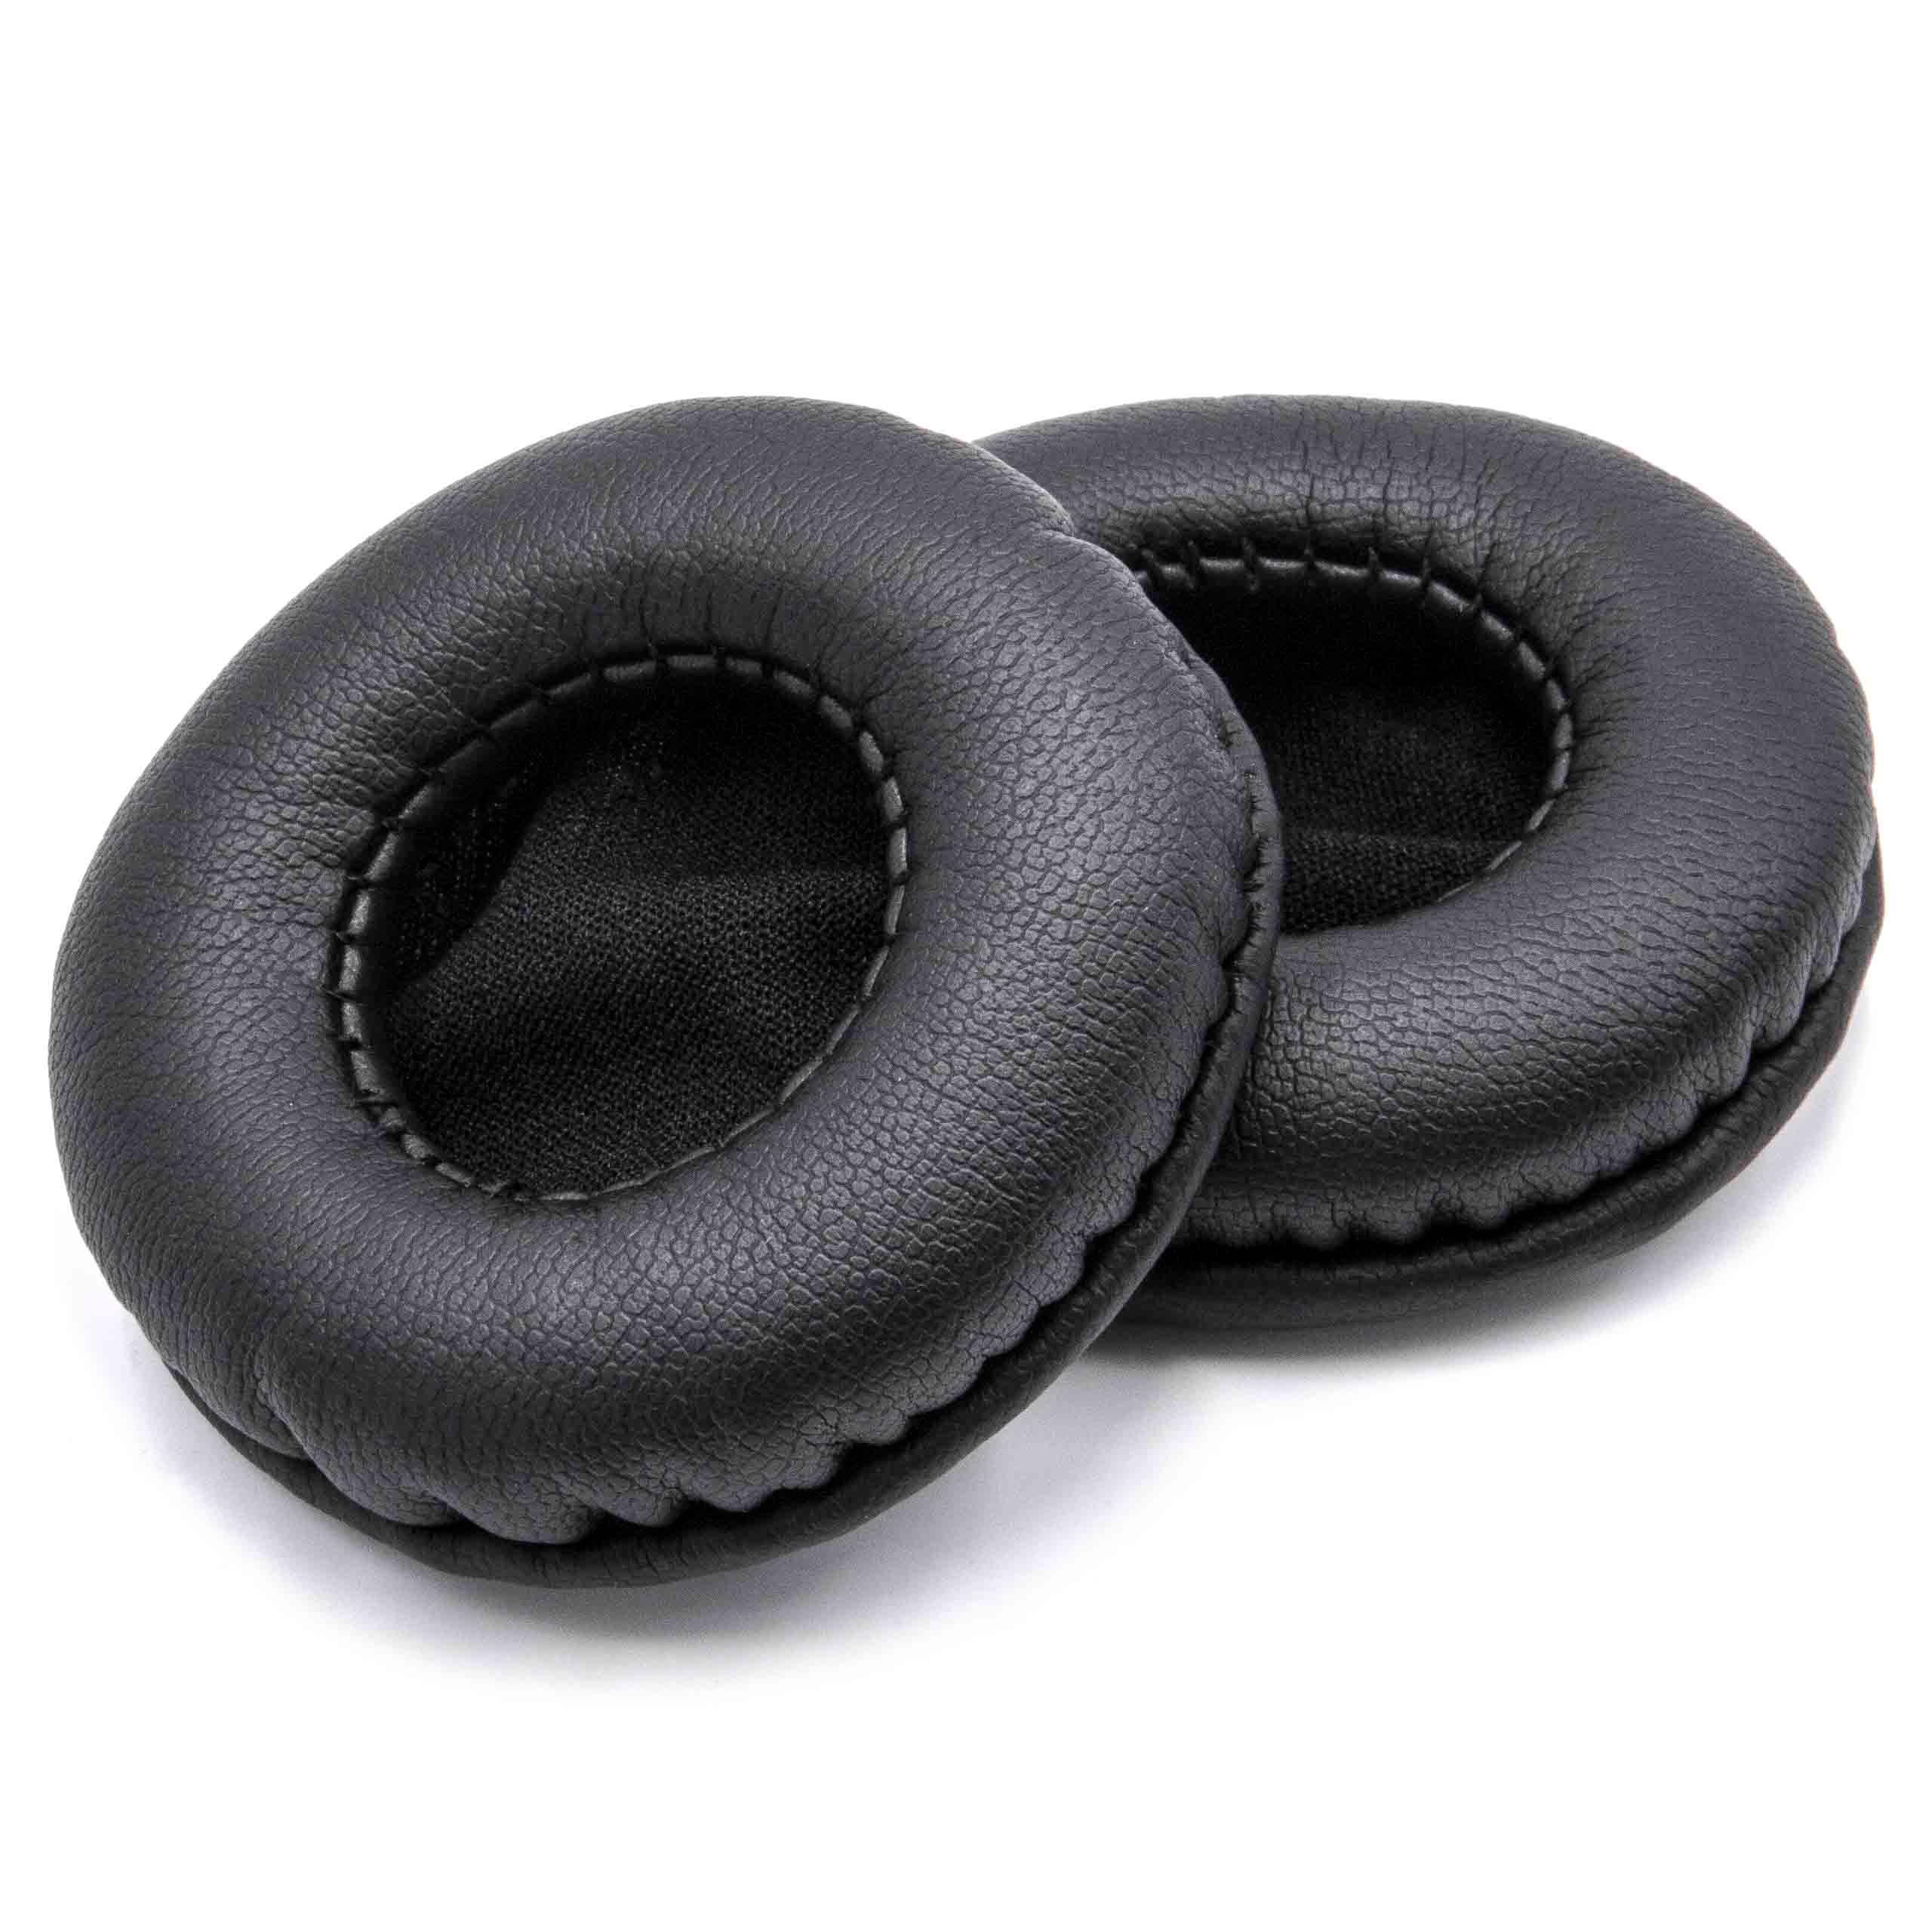 2x 1 paio di cuscinetti - poliuretano, 5,5 cm diametro esterno, nero